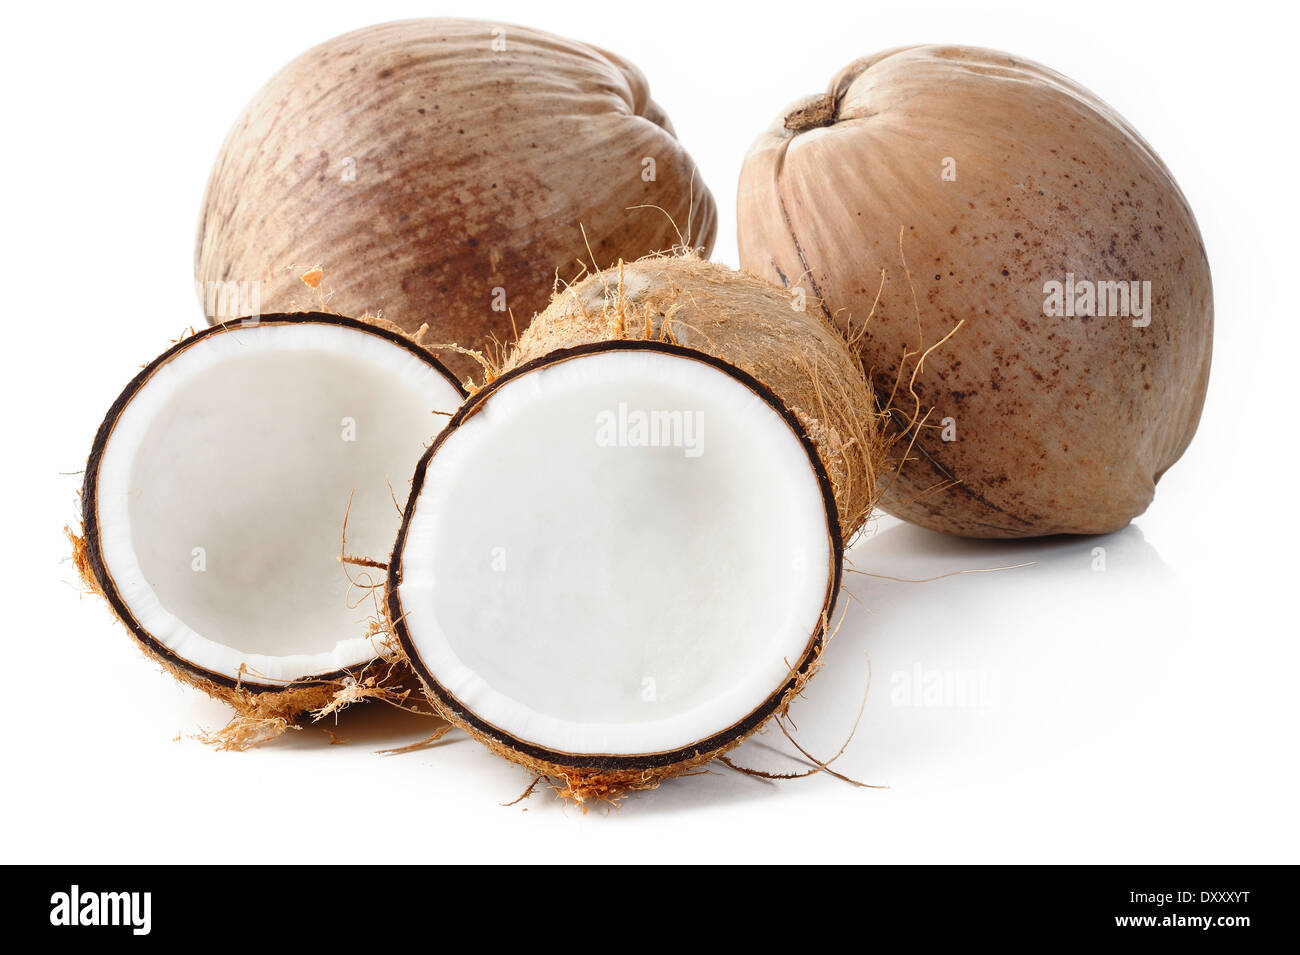 Kokosnuss auf weißem Hintergrund Stockfoto